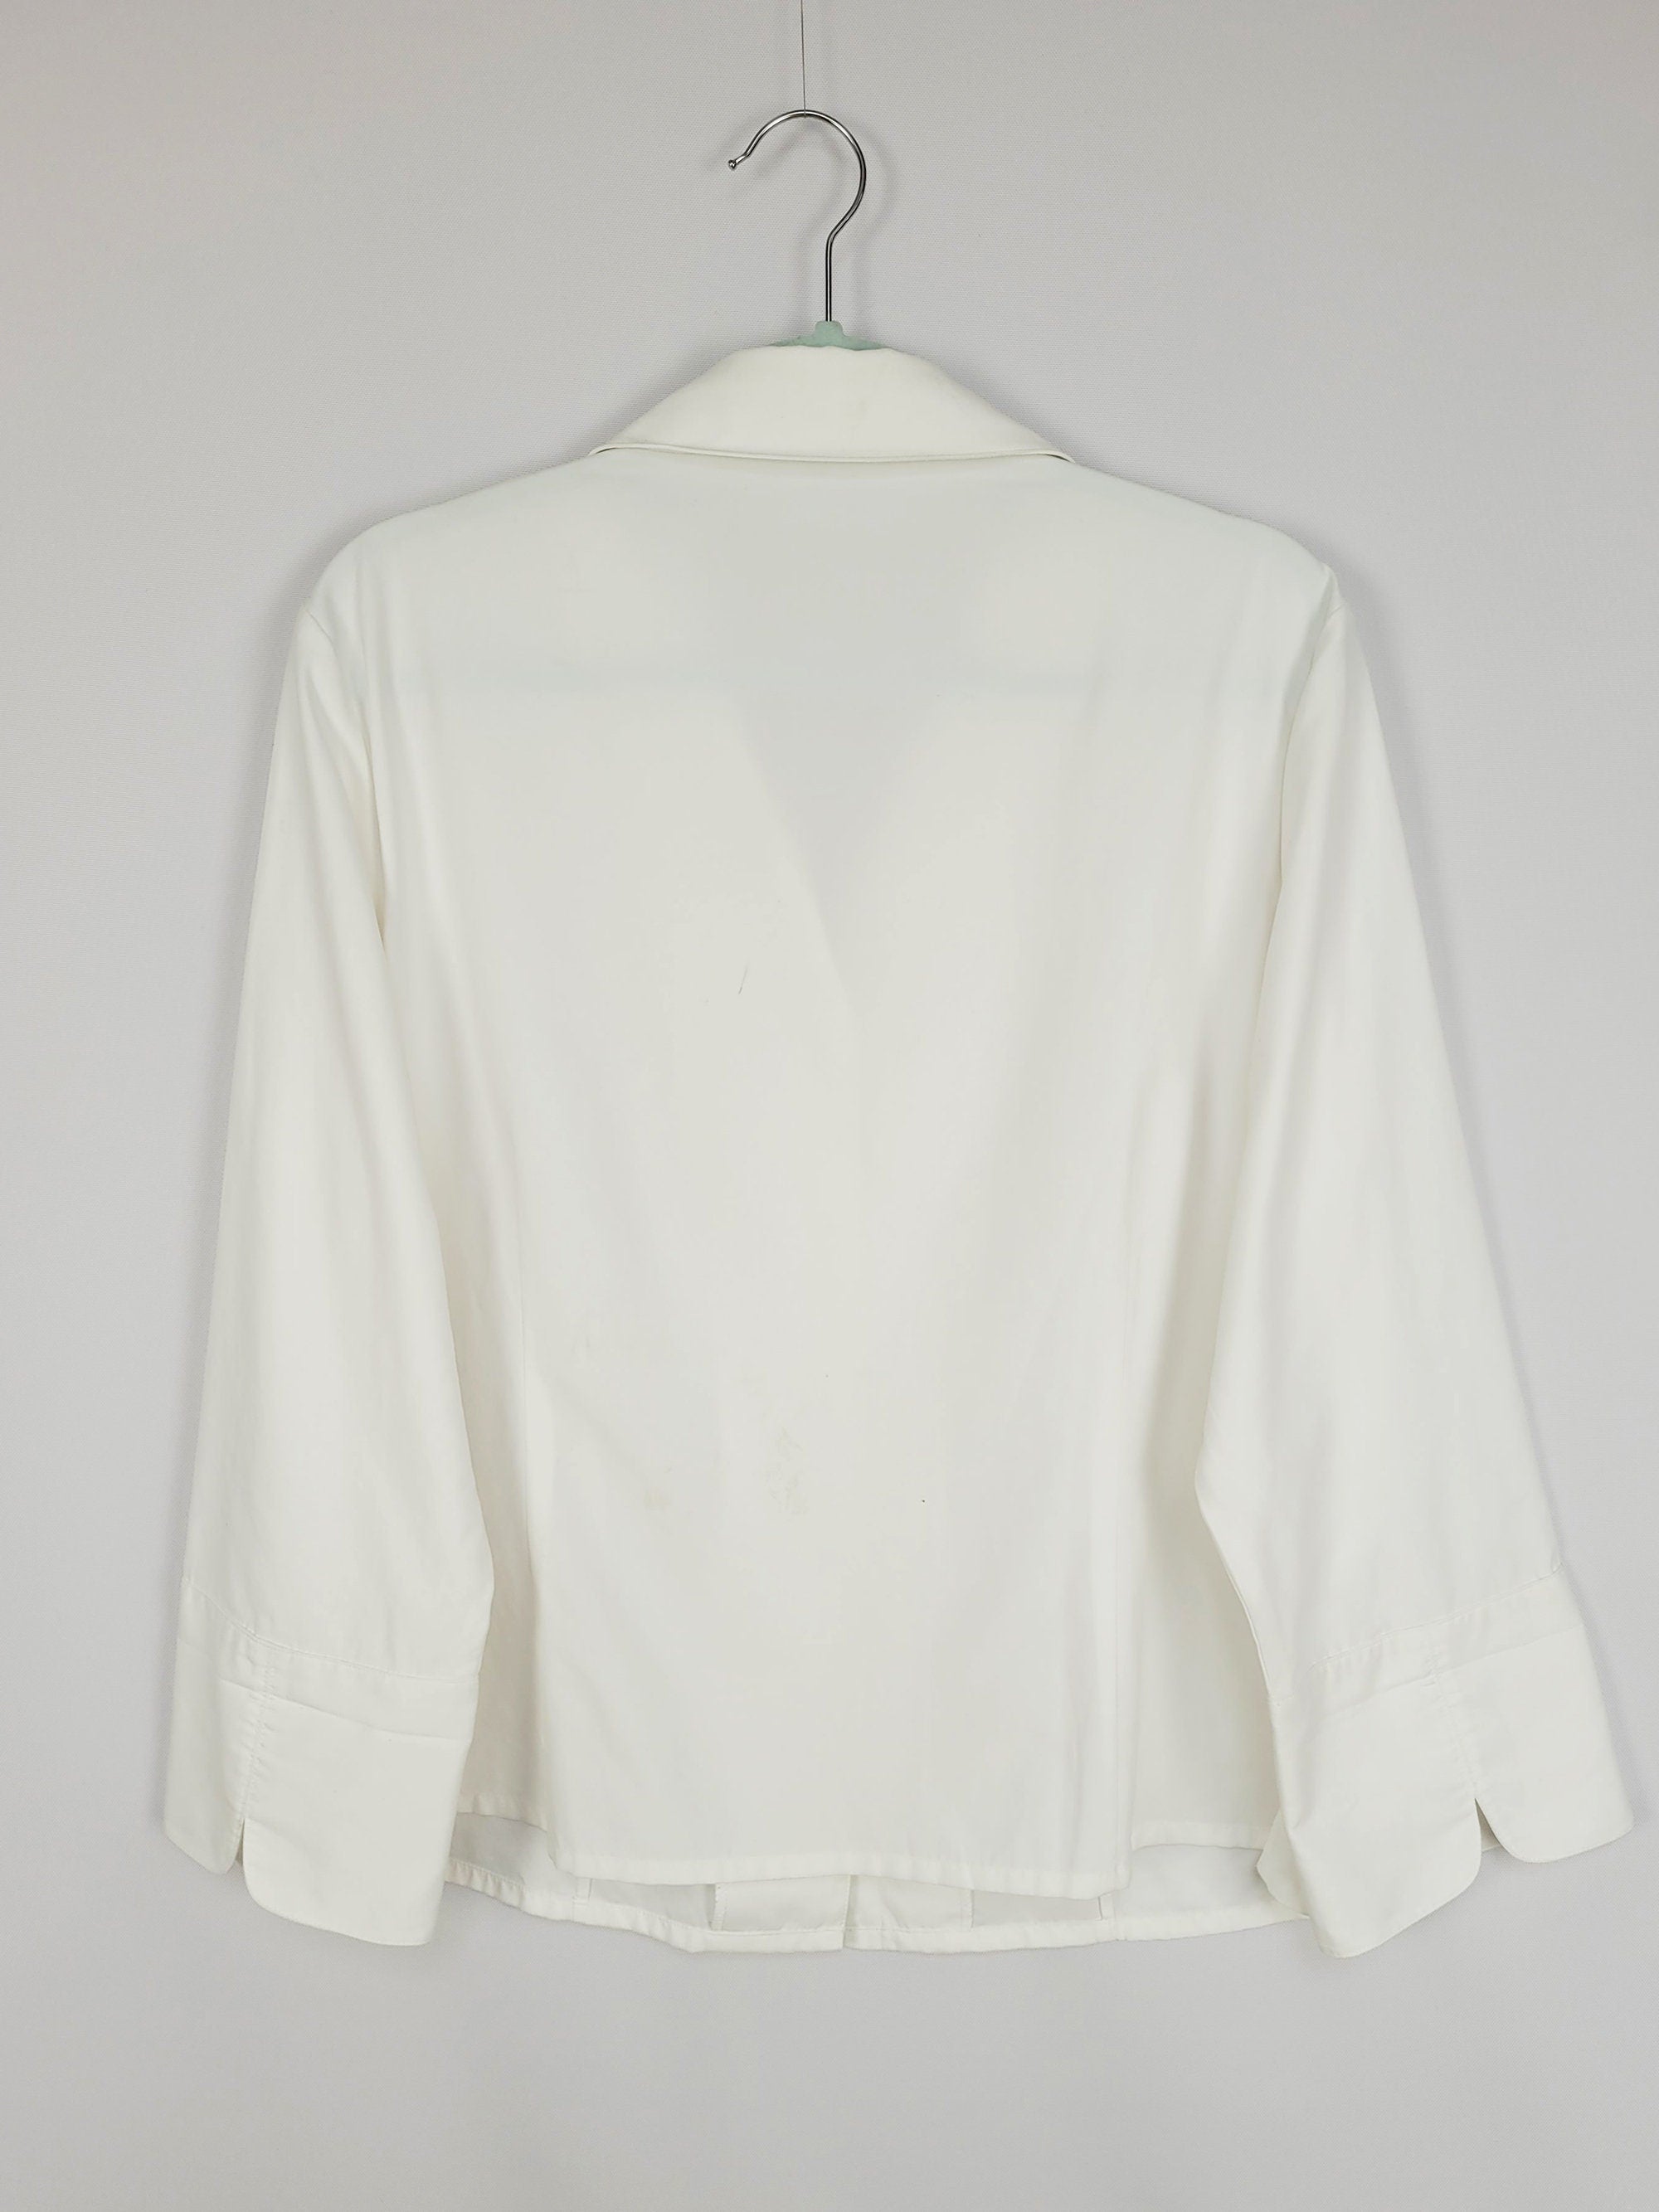 90s retro white minimalist smart basic preppy shirt blouse